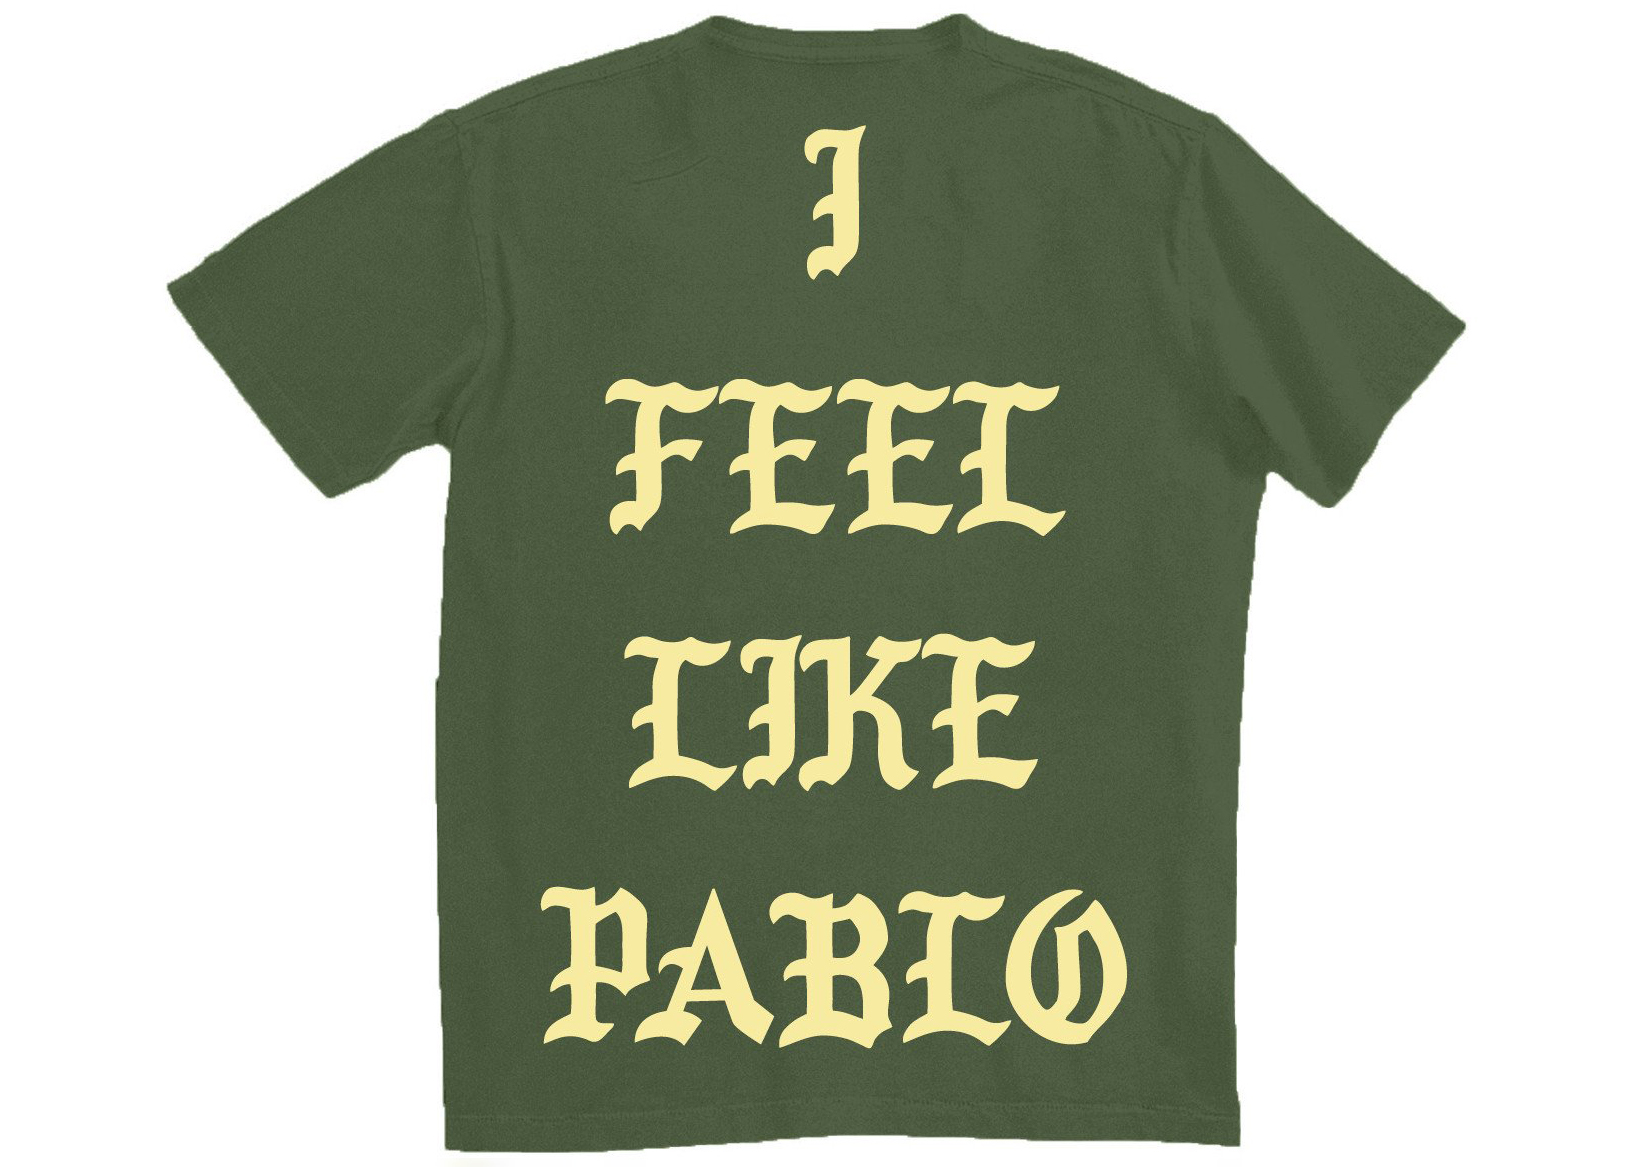 Kanye West Amsterdam Pablo Pop-Up I Feel Like Pablo T-shirt